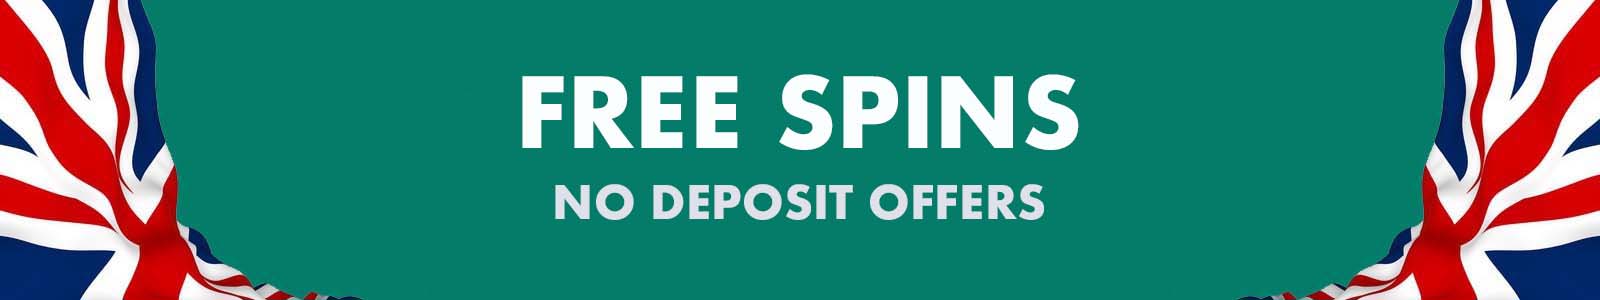 no deposit uk free spins august 2019